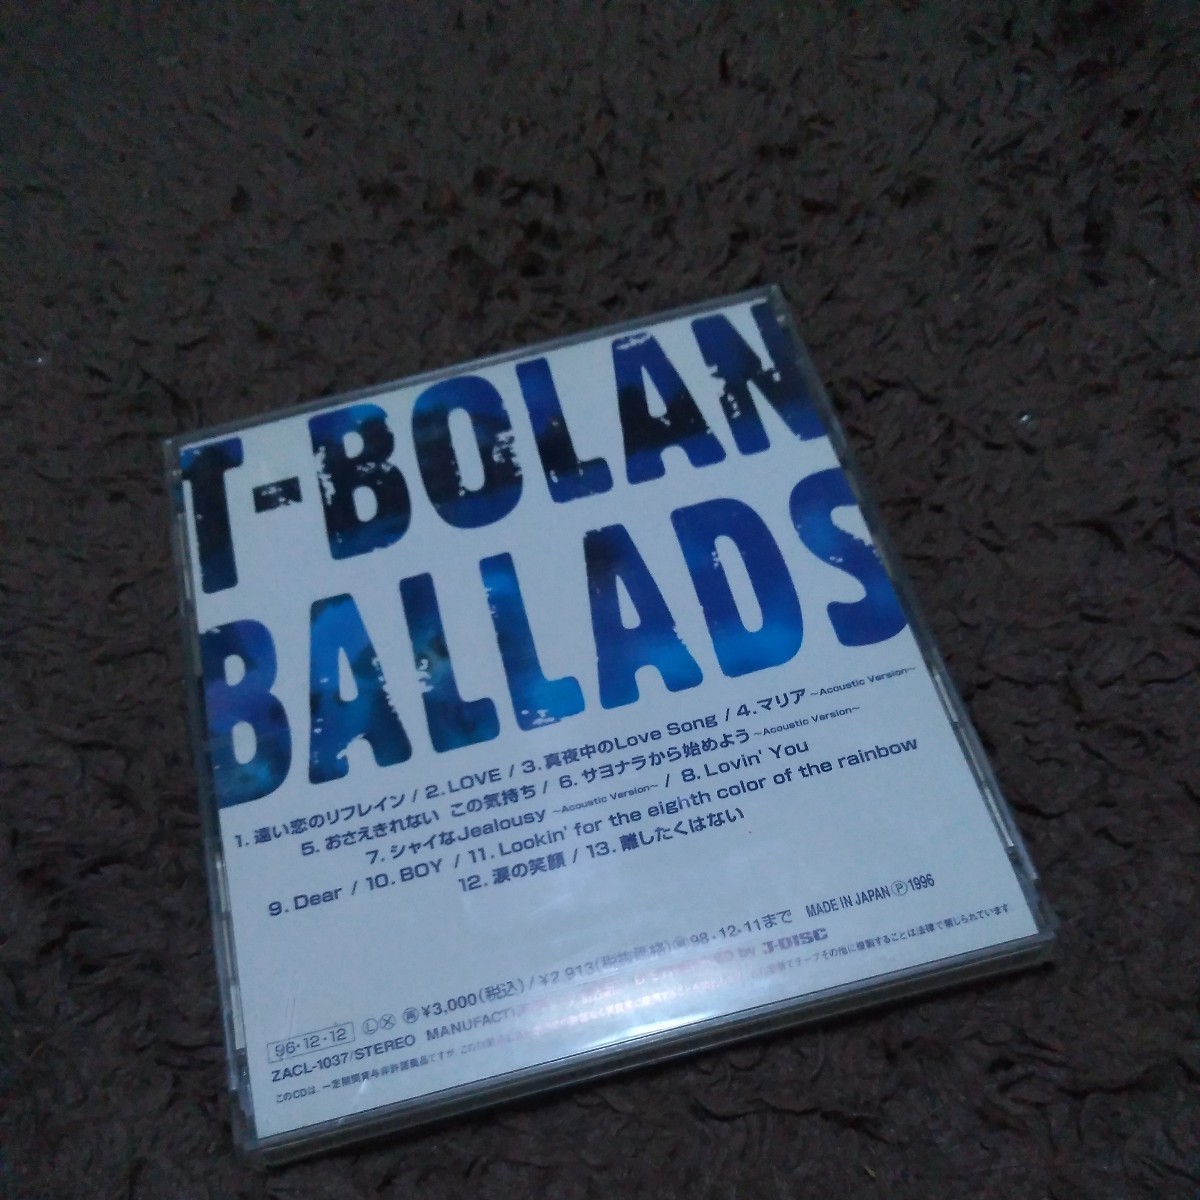 CD T-BOLAN ティーボラン BALLADS バラッズ バラード ベストアルバム BEST 離したくはない おさえきれない、この気持ち 他 13曲_画像2